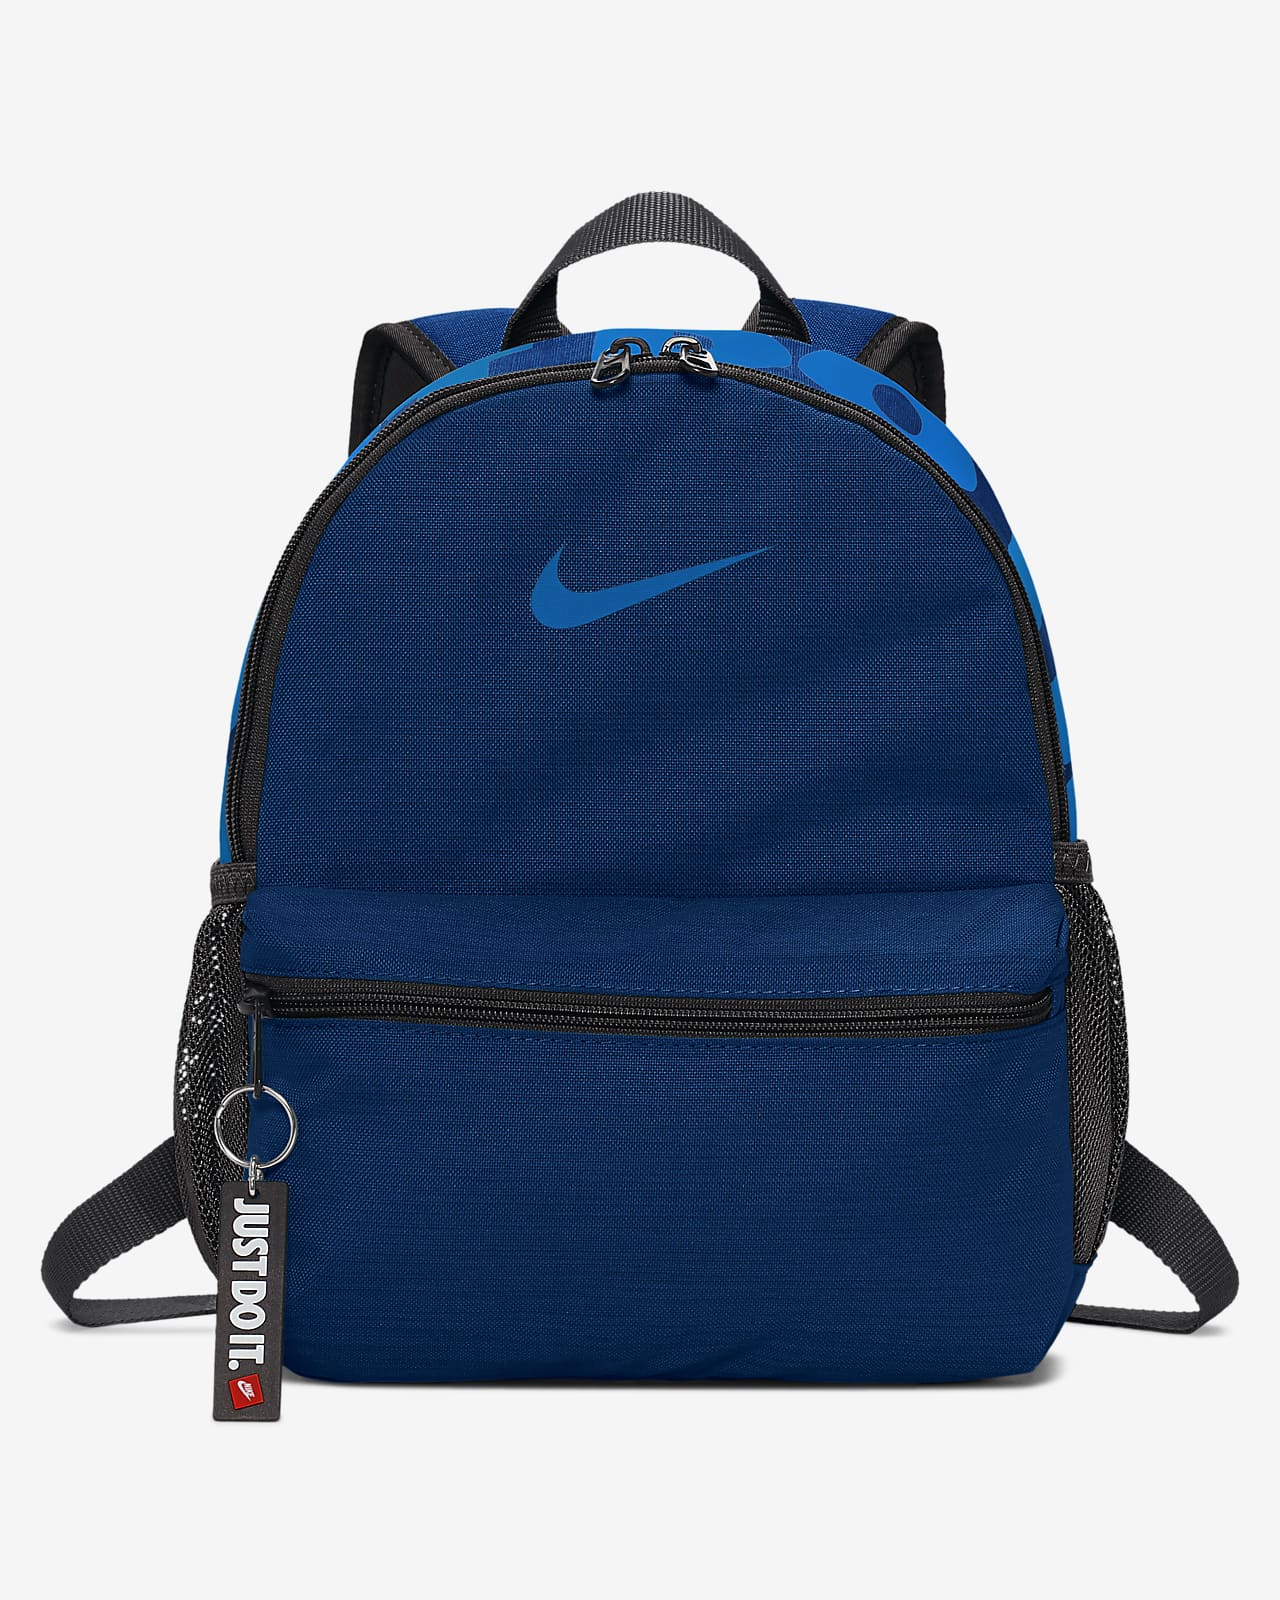 nike just do it mini backpack blue